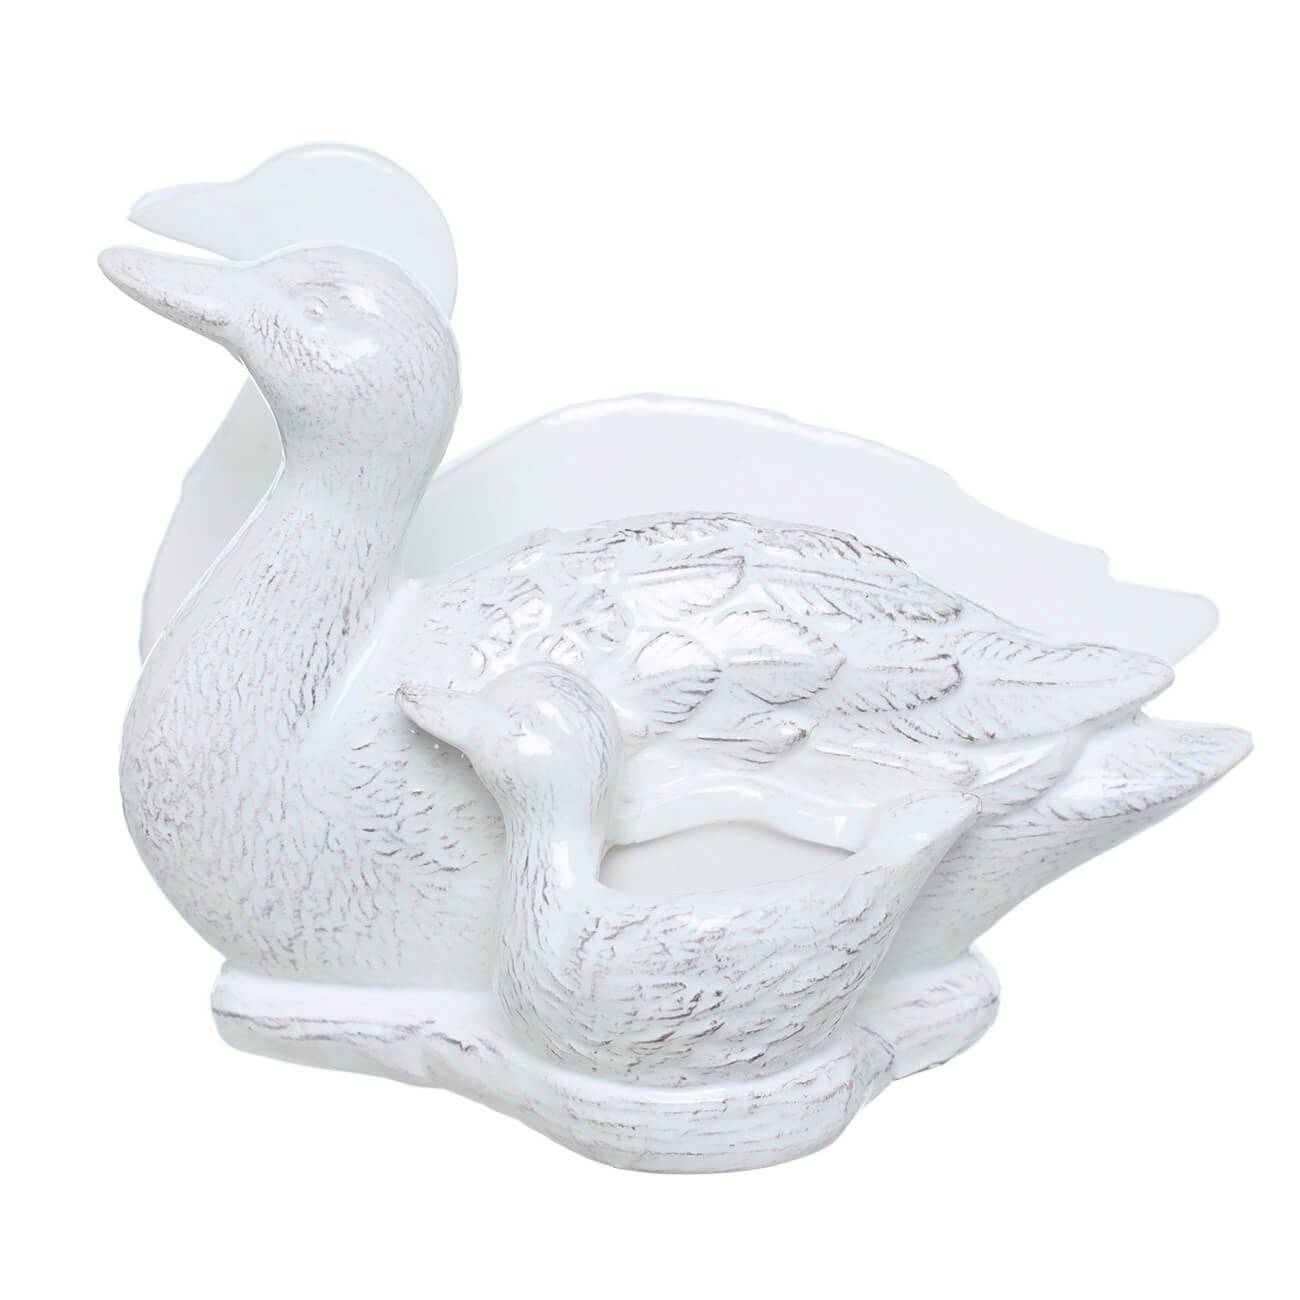 Салфетница, 15 см, с отделением для зубочисток, керамика, белая, Утка с утенком, Duck флюгер малый duck